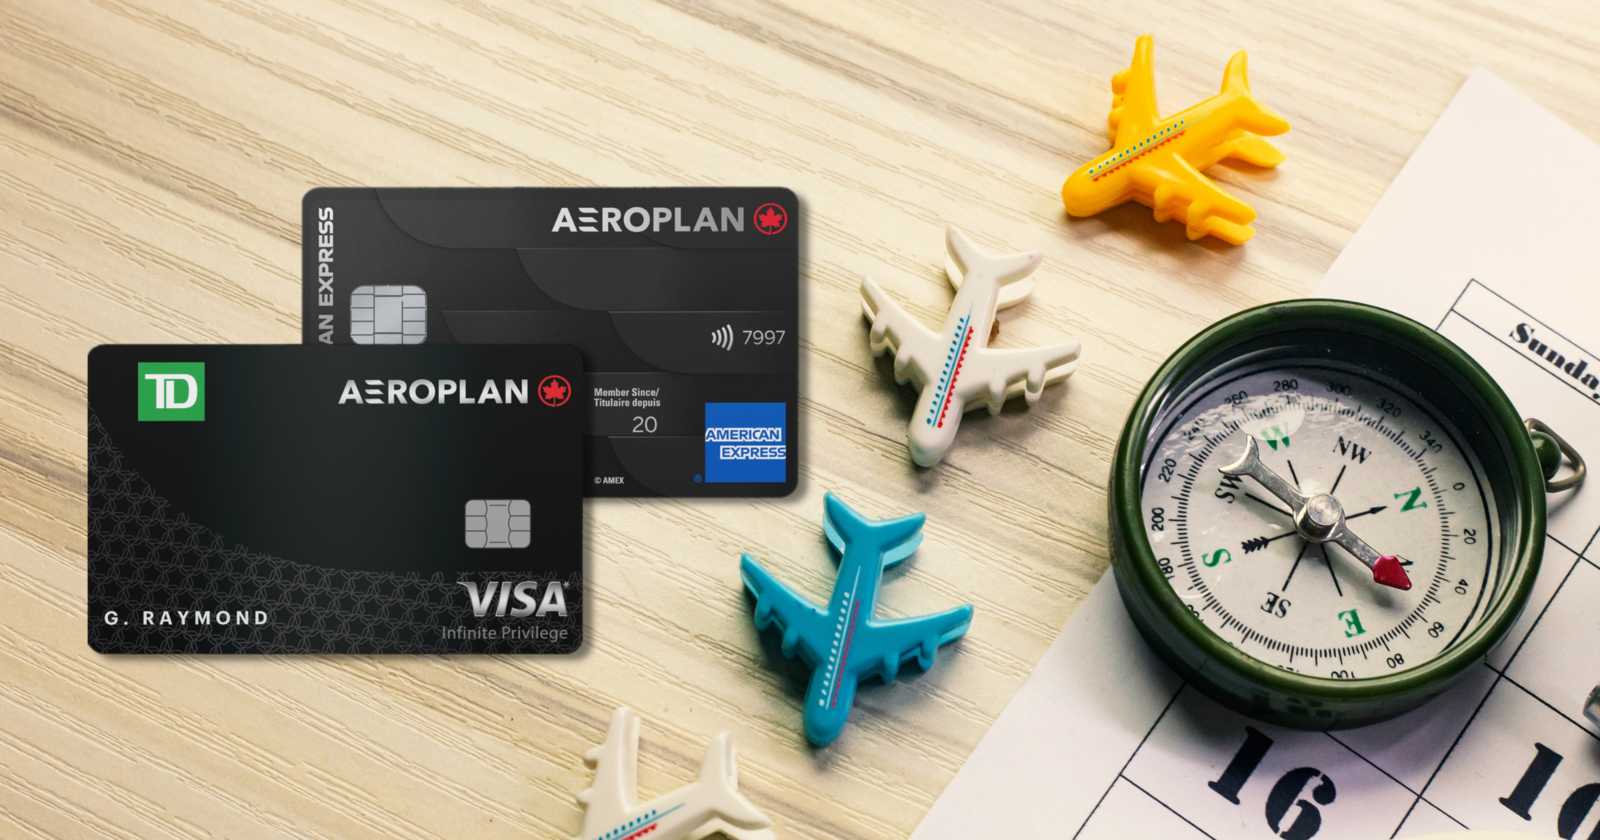 American Express Aeroplan Cards